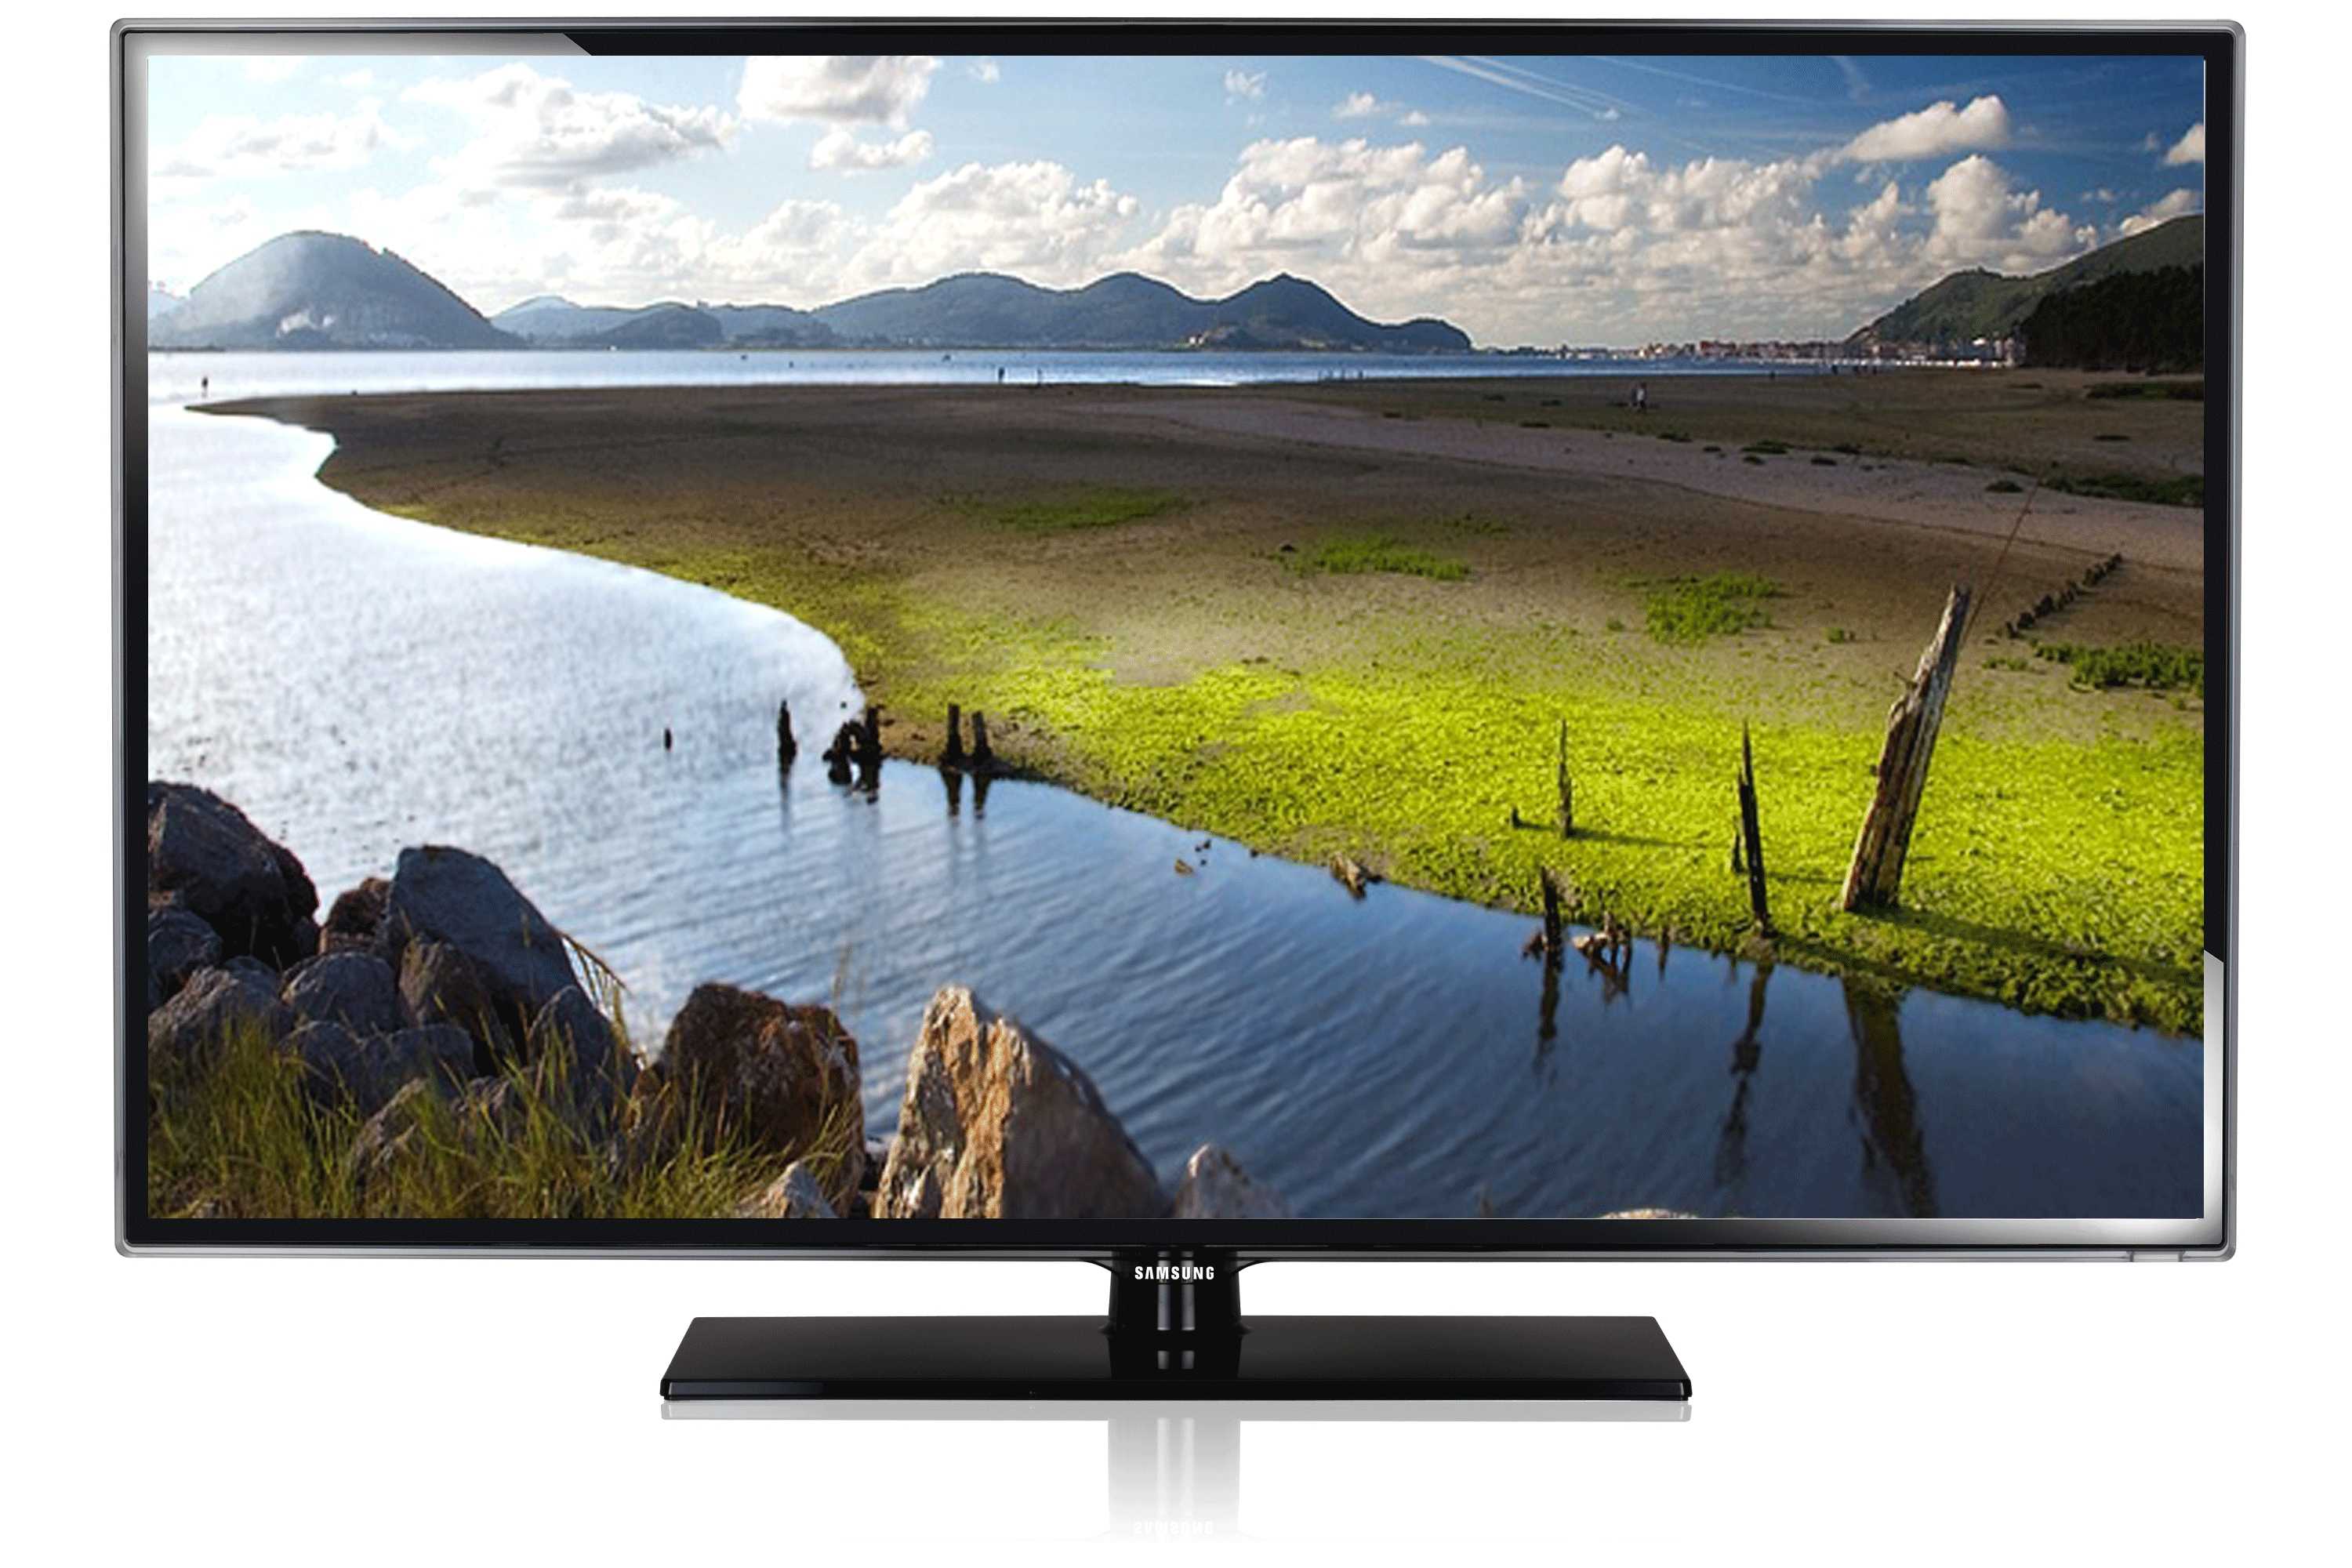 Телевизор Samsung UE-46C5000 - подробные характеристики обзоры видео фото Цены в интернет-магазинах где можно купить телевизор Samsung UE-46C5000